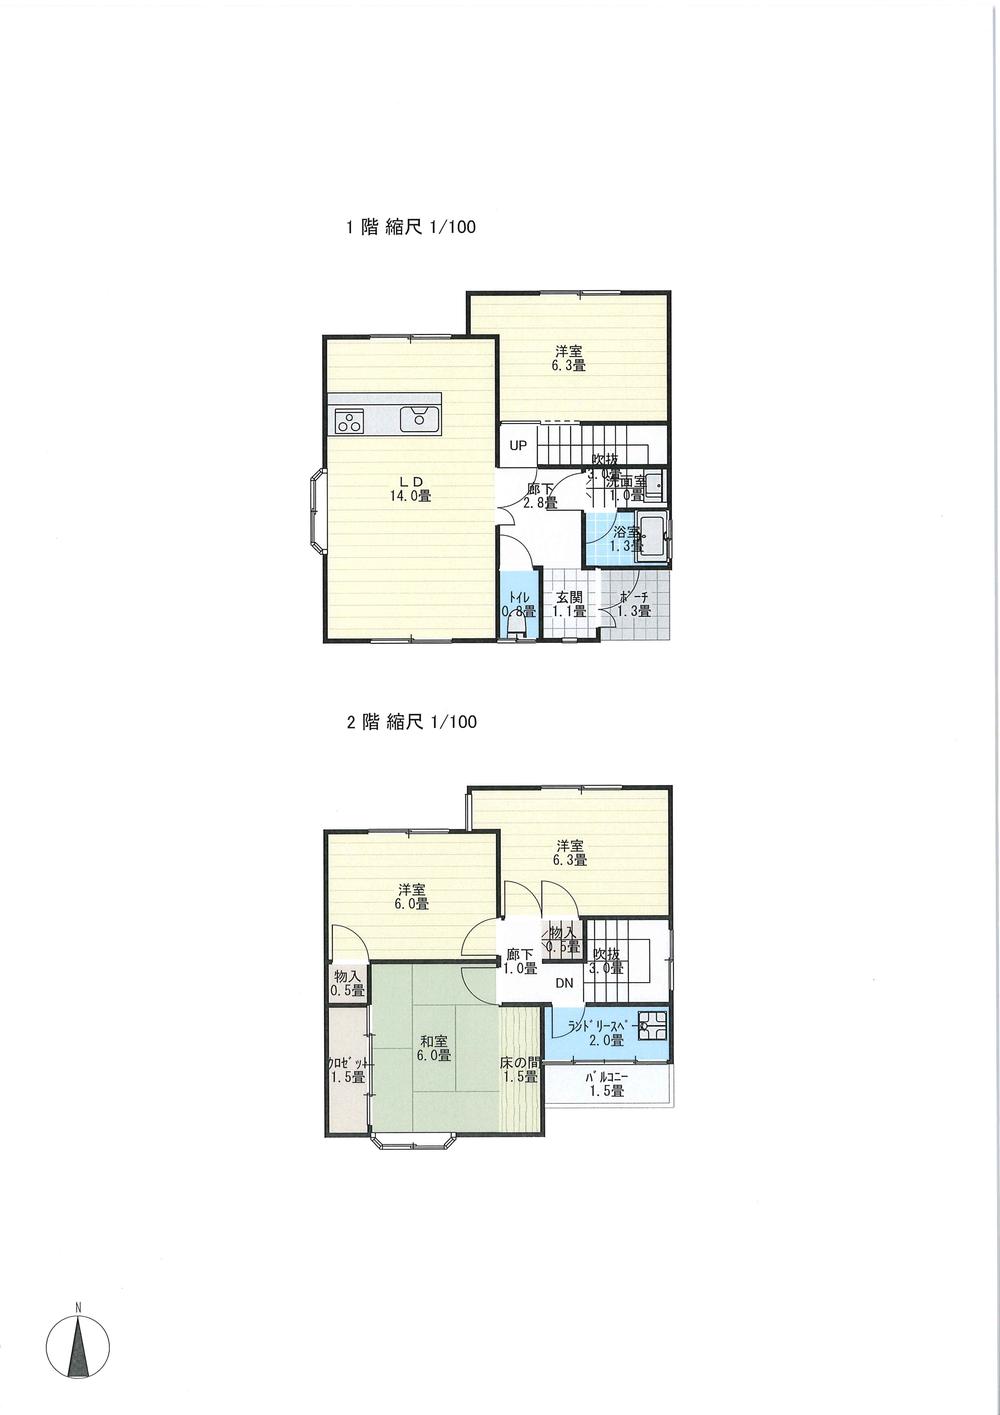 Floor plan. 16.8 million yen, 4LDK, Land area 89.28 sq m , Building area 94.14 sq m